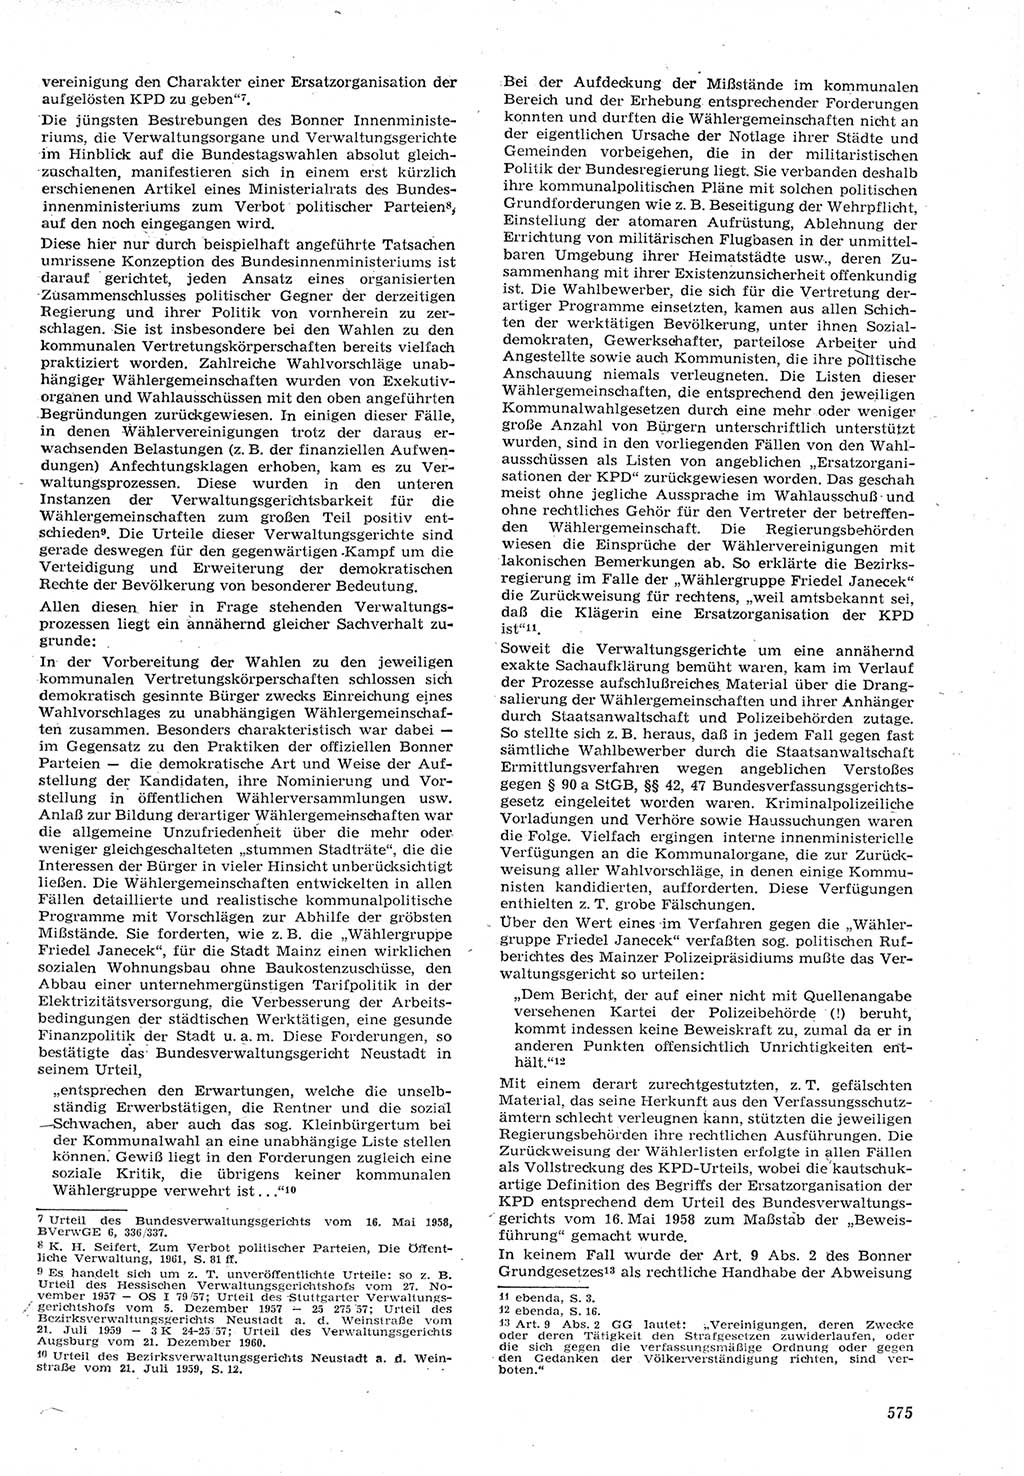 Neue Justiz (NJ), Zeitschrift für Recht und Rechtswissenschaft [Deutsche Demokratische Republik (DDR)], 15. Jahrgang 1961, Seite 575 (NJ DDR 1961, S. 575)